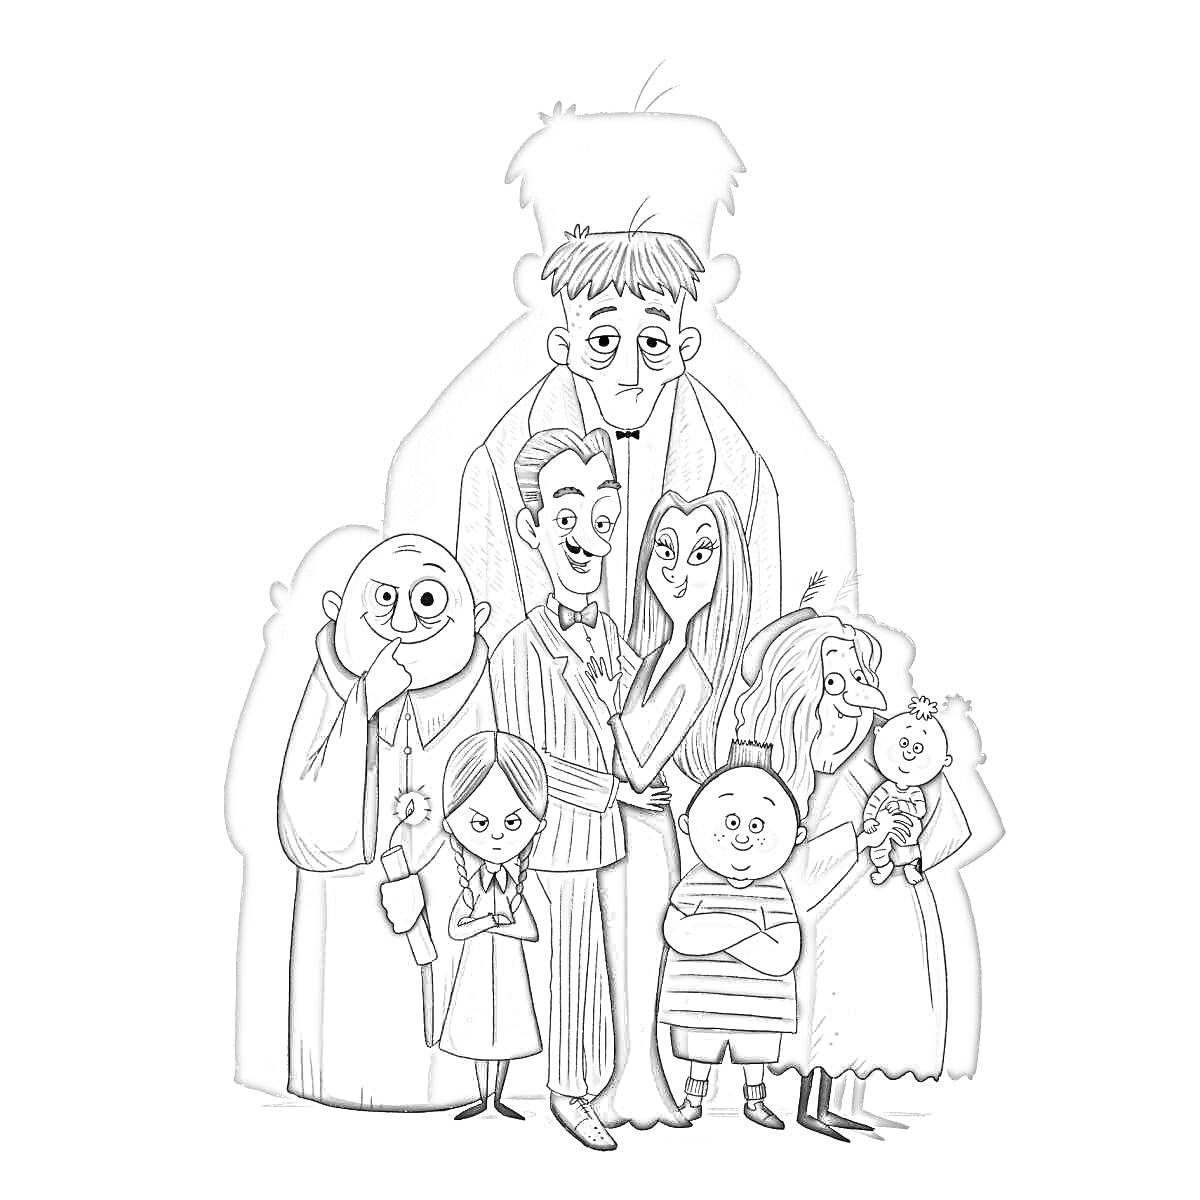 Семья, стоящая на фоне большого мужчины в тени, включая мужчину в полосатом костюме, женщину с длинными волосами, лысого мужчины, девочку в полосатом платье с косичками, мальчика в полоске и женщину с длинными волосами и куклой в руках